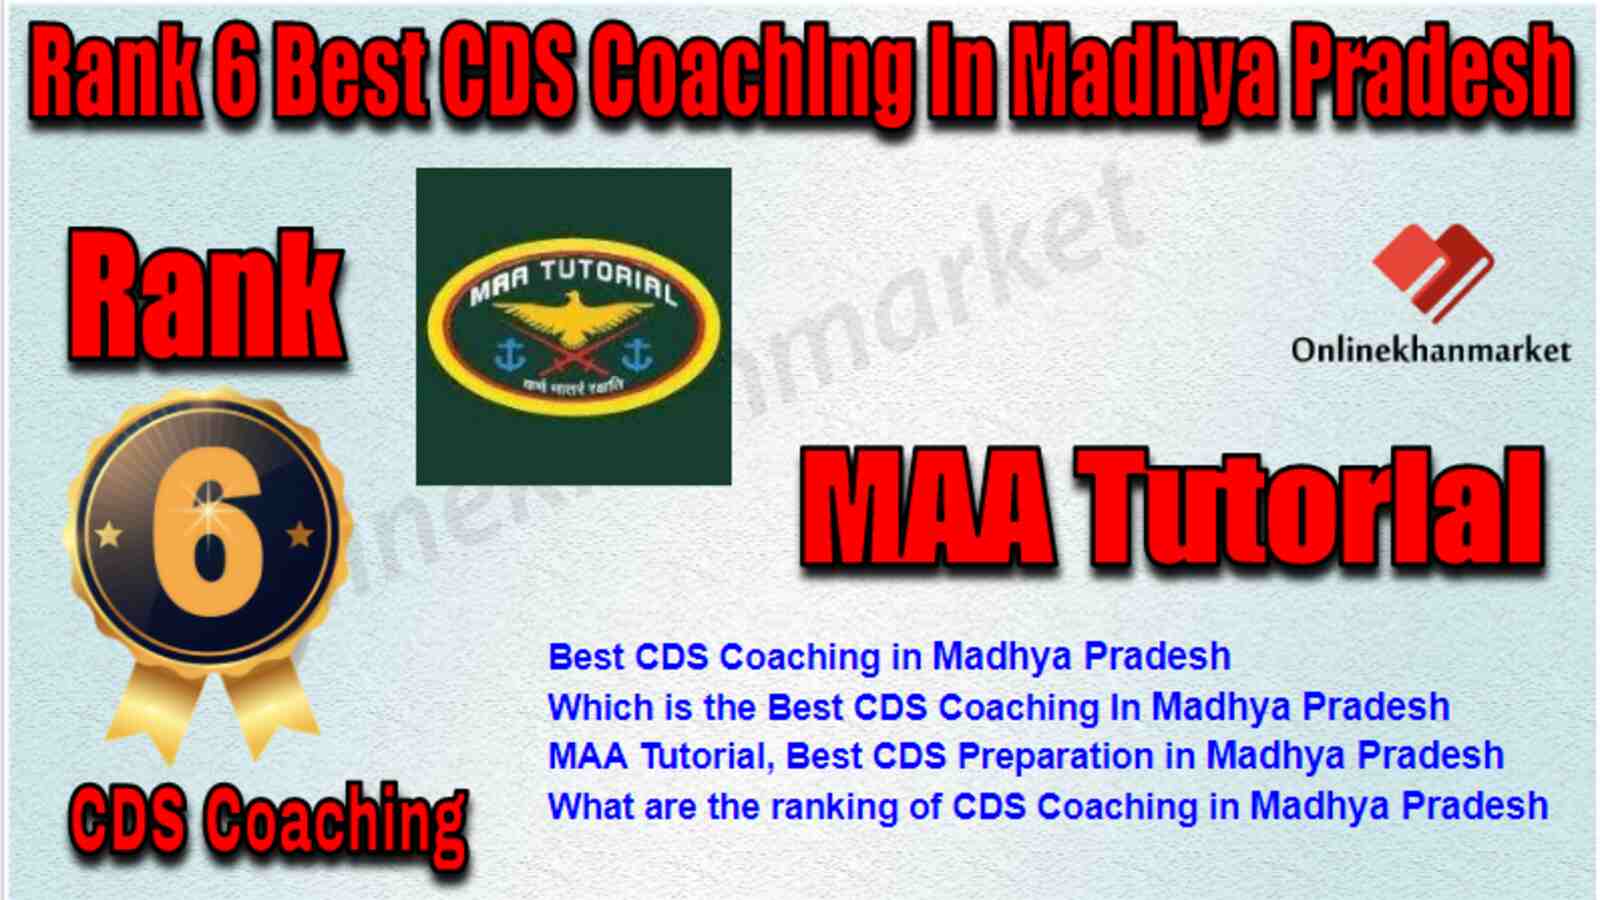 Rank 6 Best CDS Coaching in Madhya Pradesh